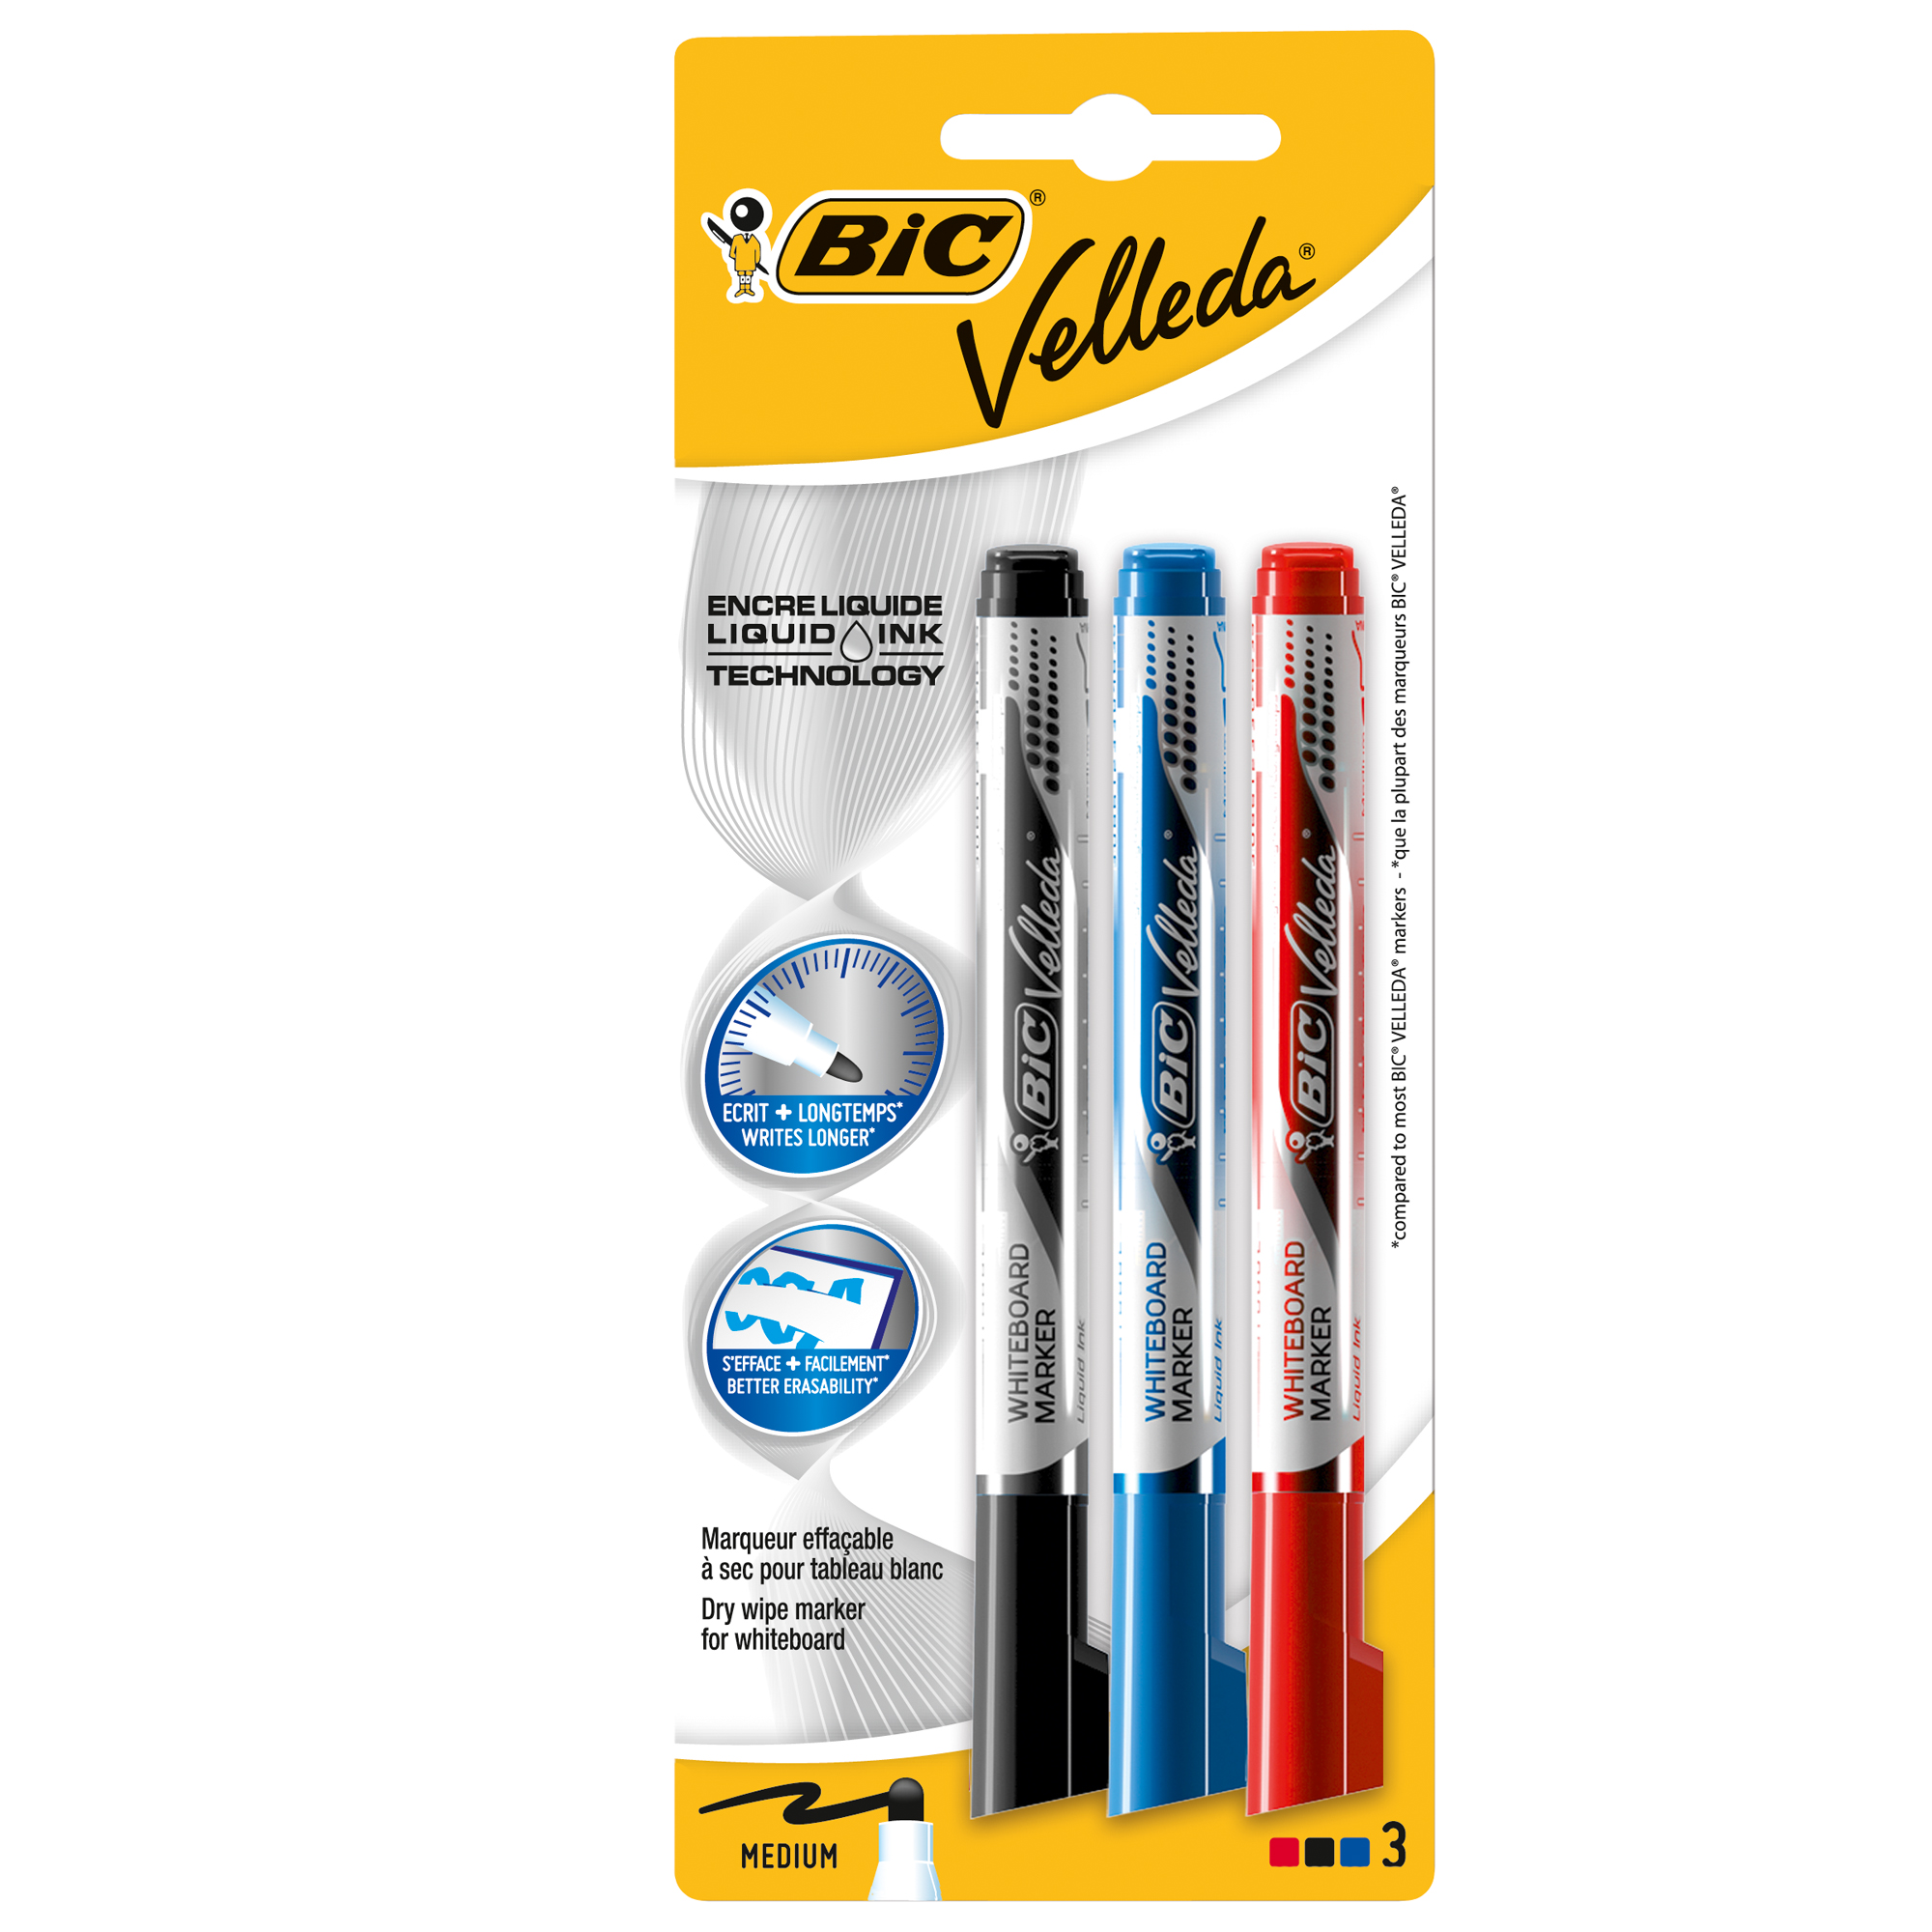 Pennarello per lavagne cancellabili Whiteboard Marker Velleda 1701 Recycled (blu) + 3 Ink Pocket (nero / rosso / blu)  - Bic - promo box 12 + 3 pezzi